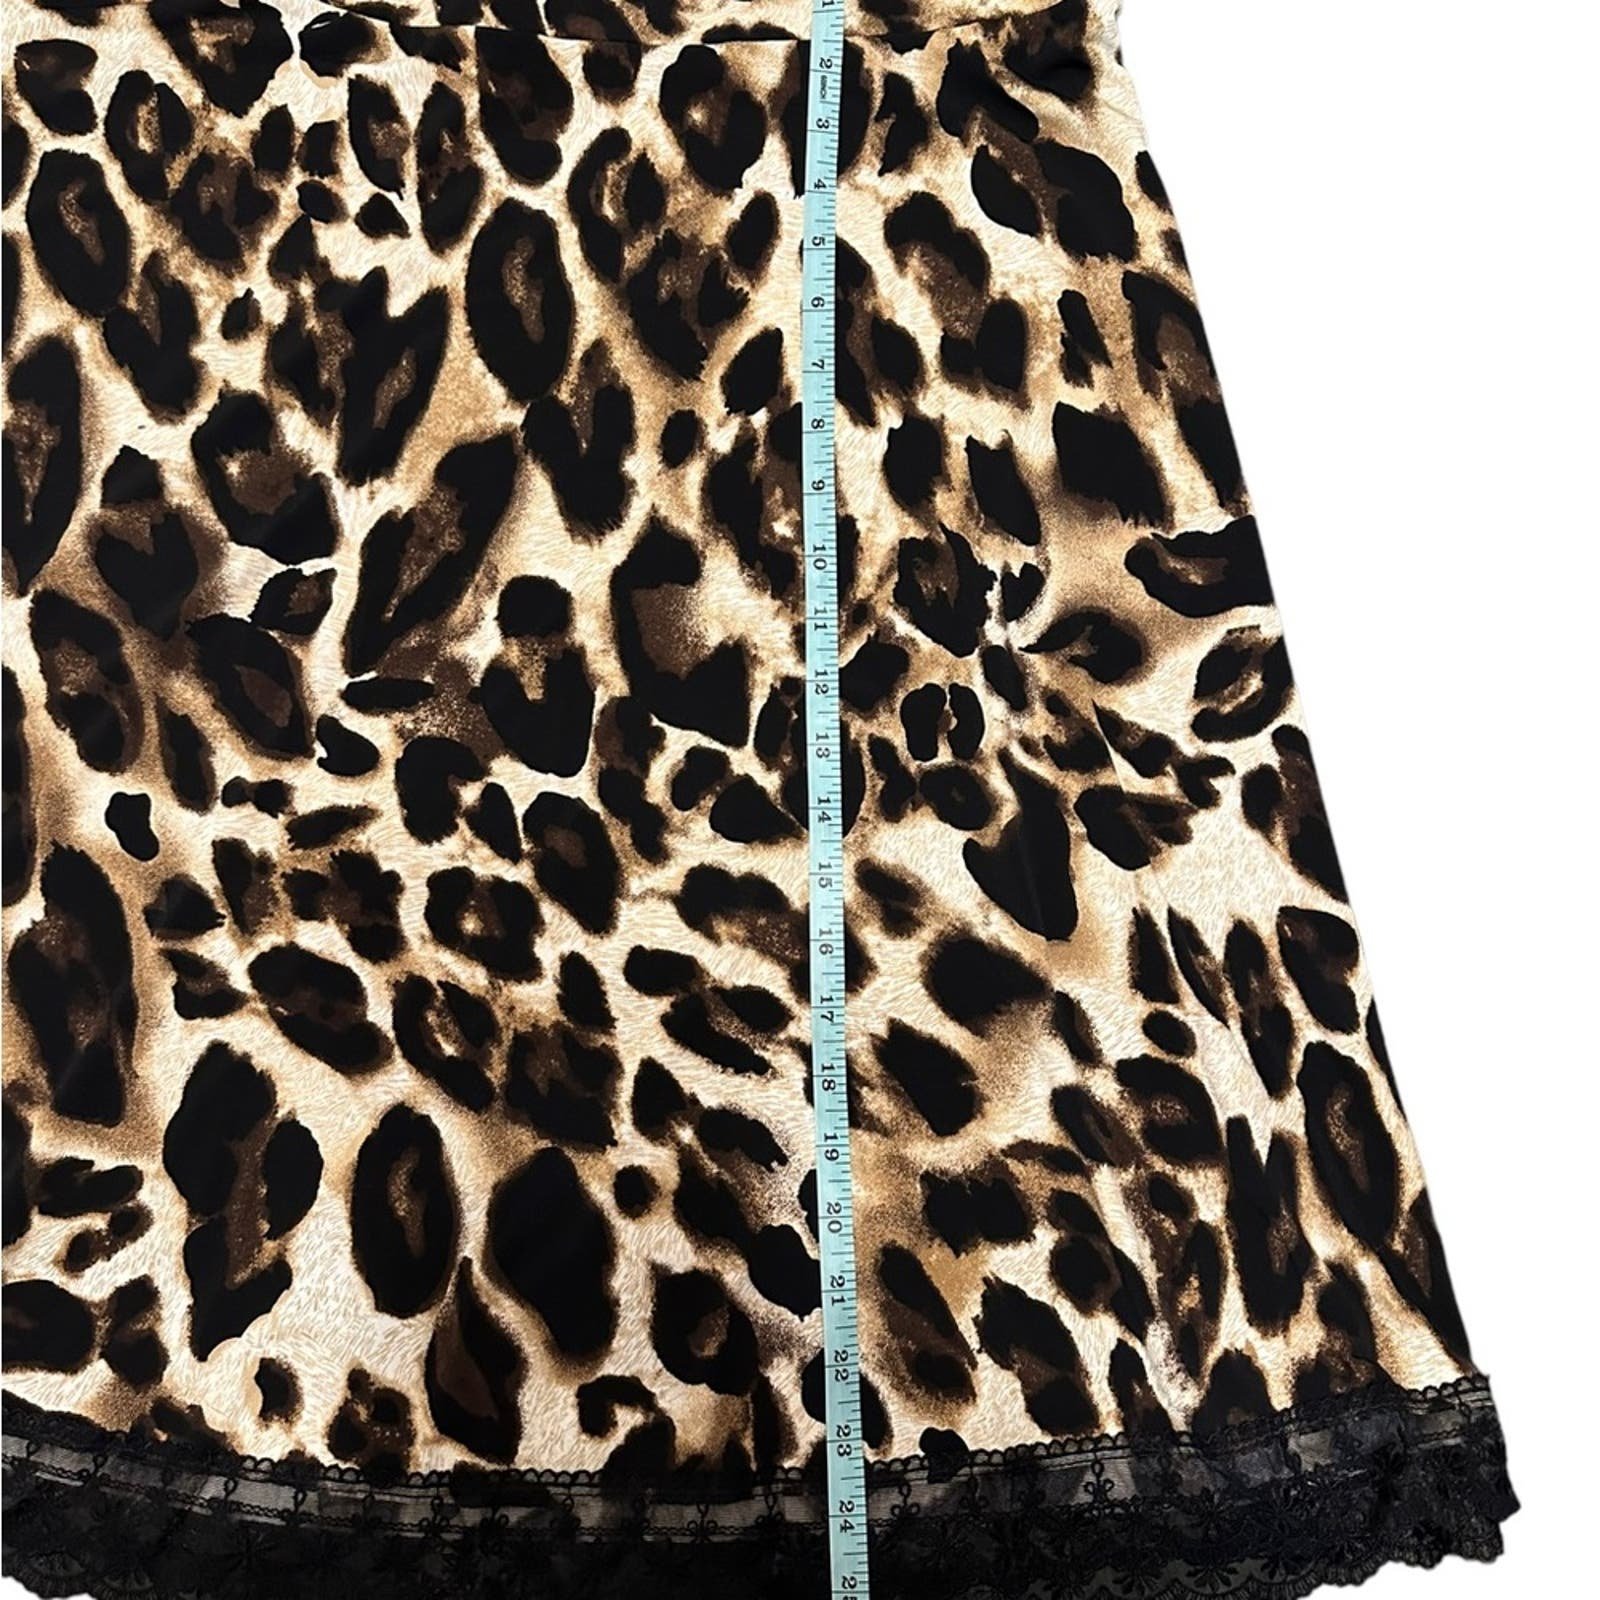 Authentic Grace Elements Cheetah Animal Print Stretch Y2K Skirt Lace Trim Plus Size 2X Mvs4KDydv US Sale